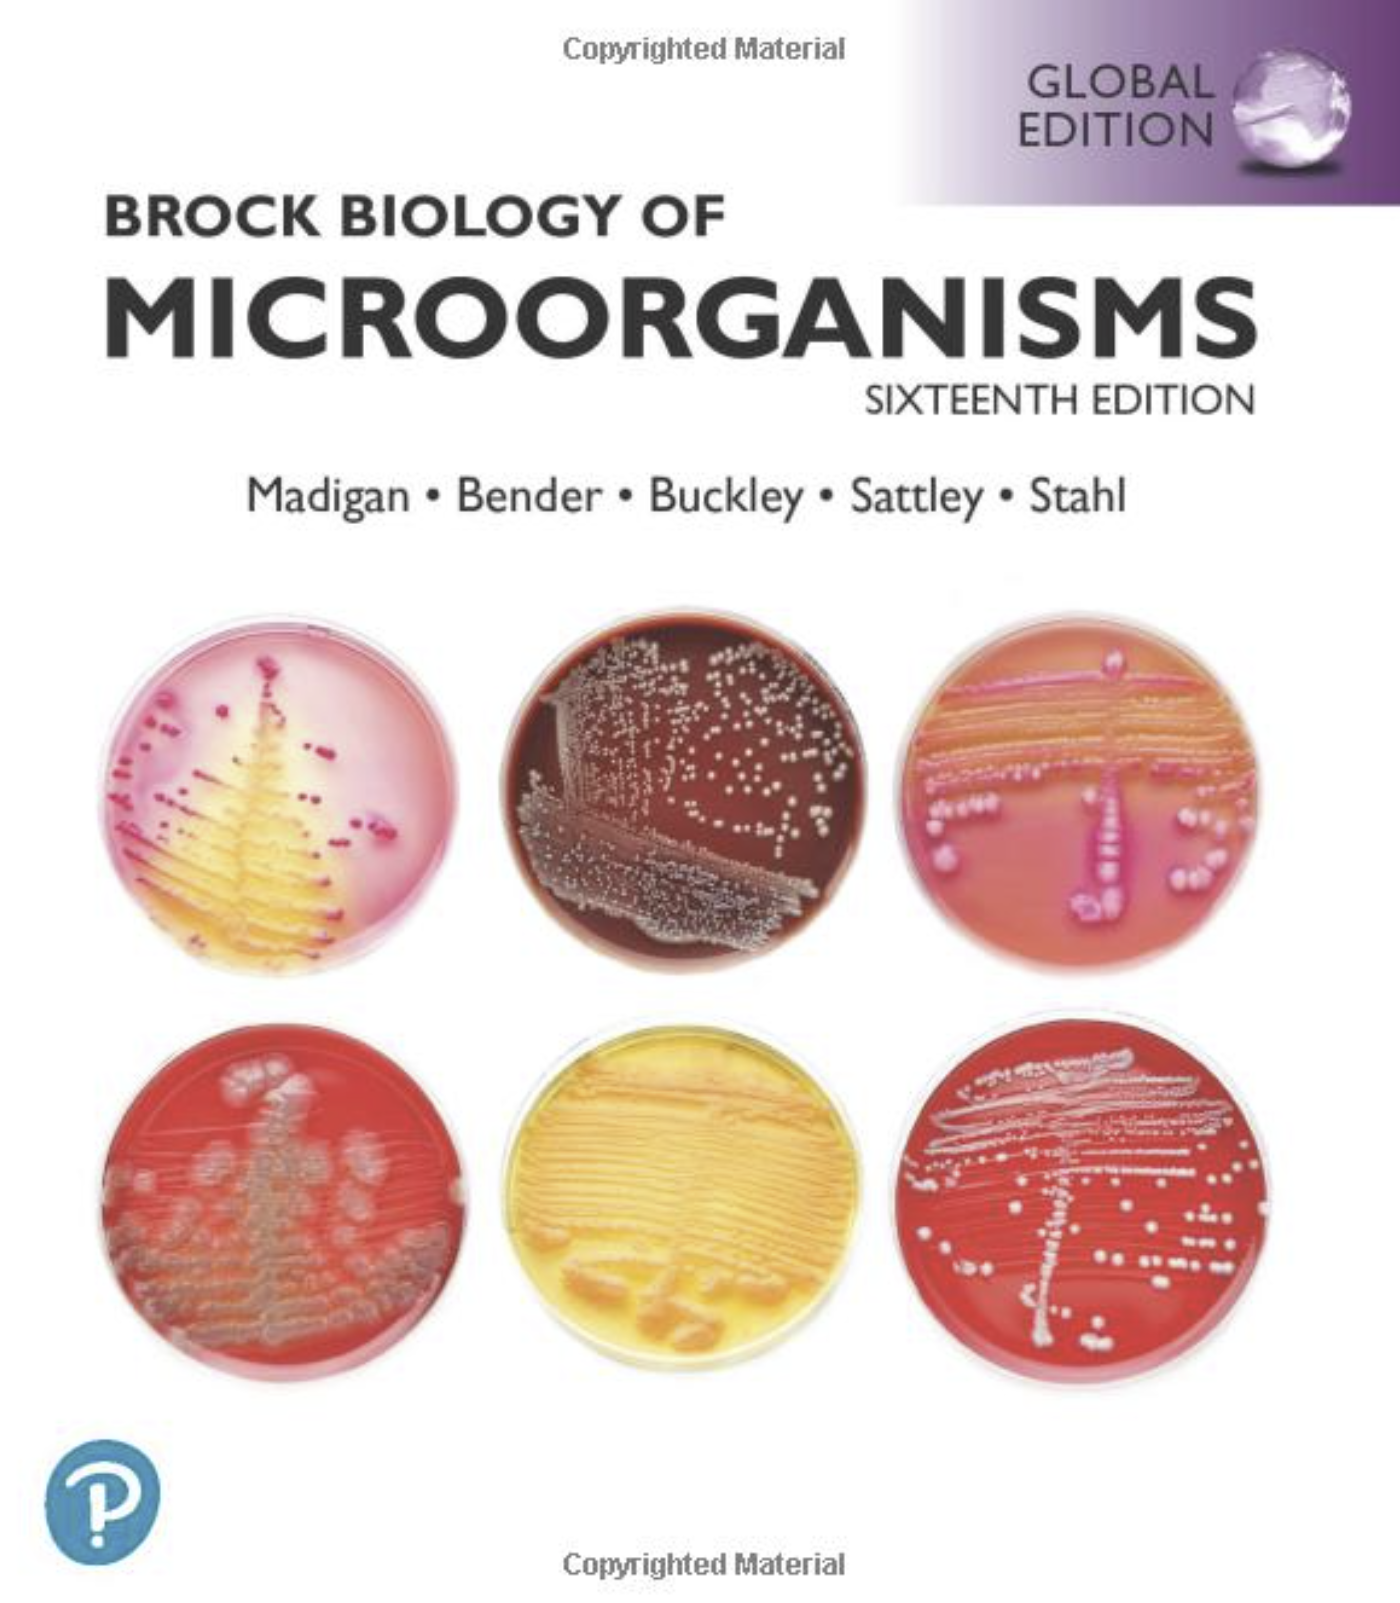 Brock Biology of Microorganisms by Madigan, Bender, Buckley, and Sattley